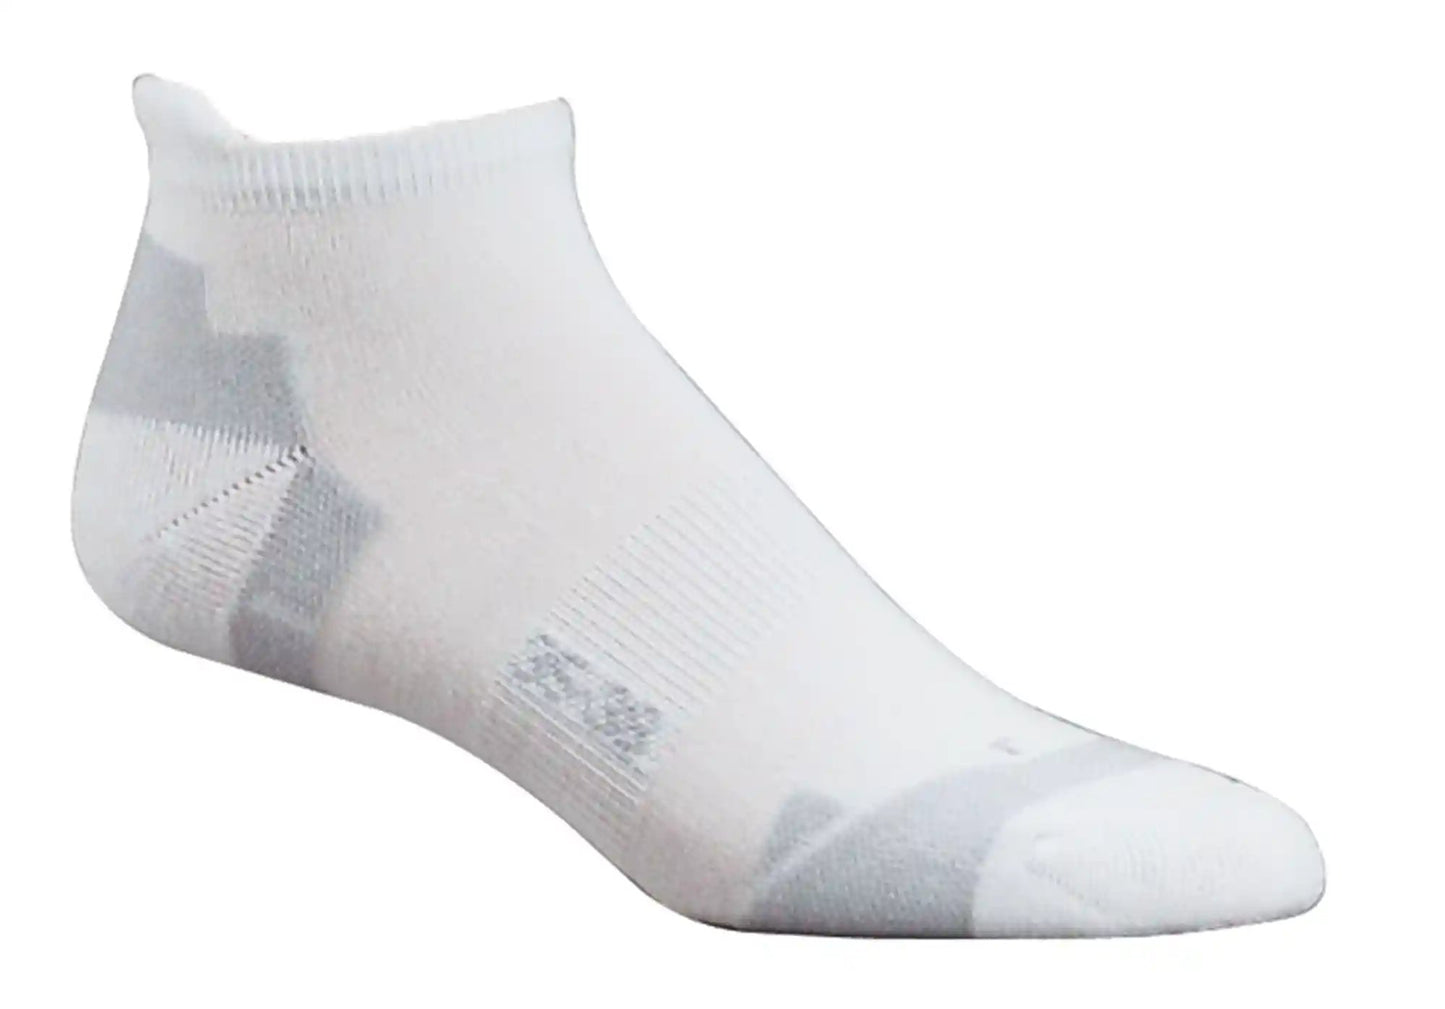 Sport Sneaker Socken mit Coolmax® und spezial  im ganzen abgebildet und in der Farbe weiß gehalten.Polstern